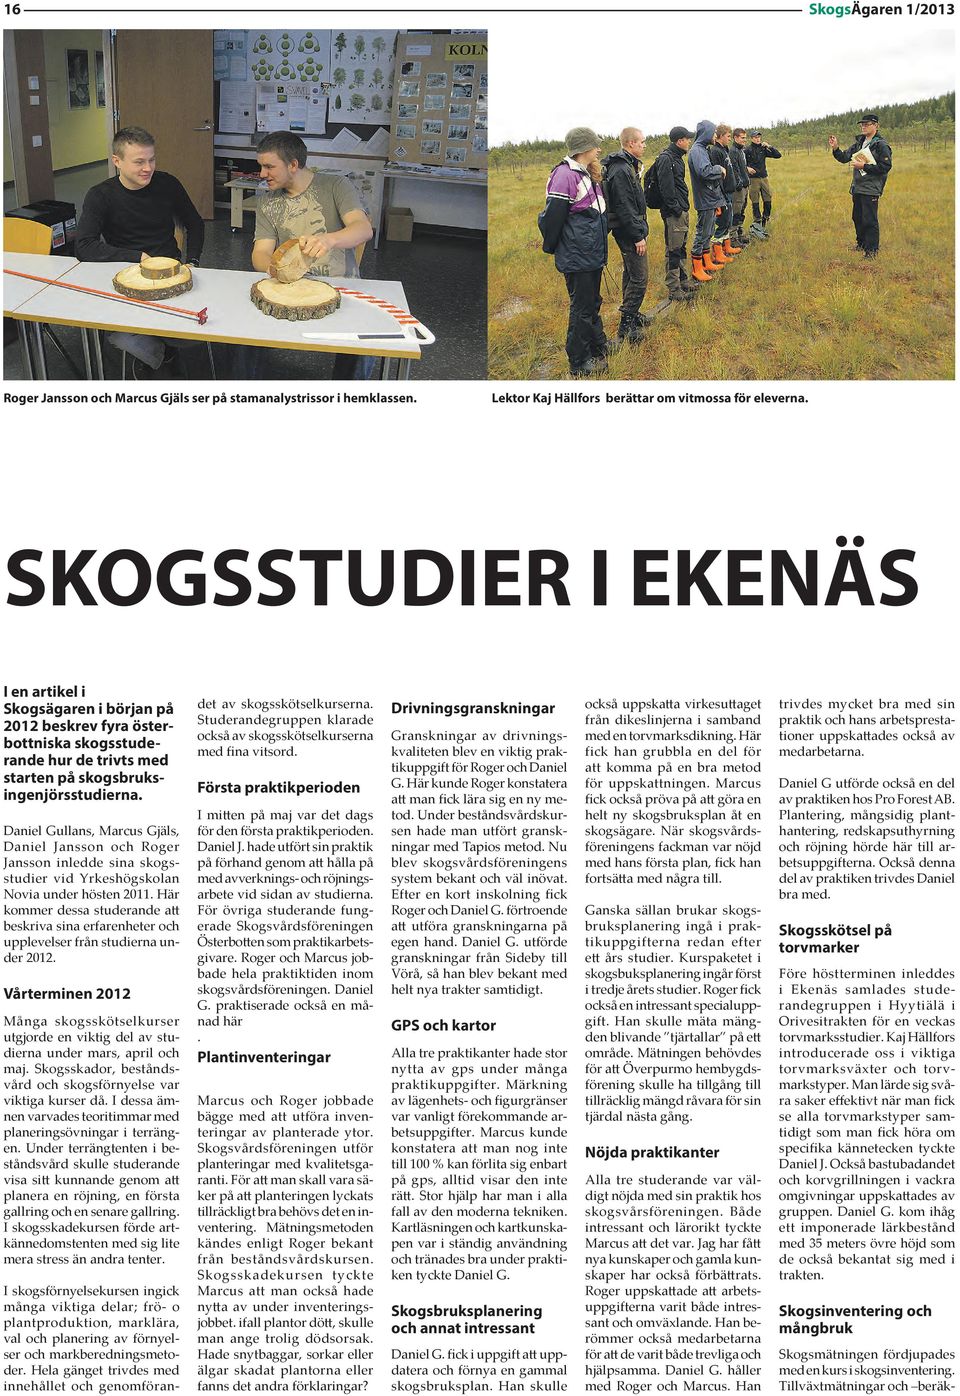 Daniel Gullans, Marcus Gjäls, Daniel Jansson och Roger Jansson inledde sina skogsstudier vid Yrkeshögskolan Novia under hösten 2011.